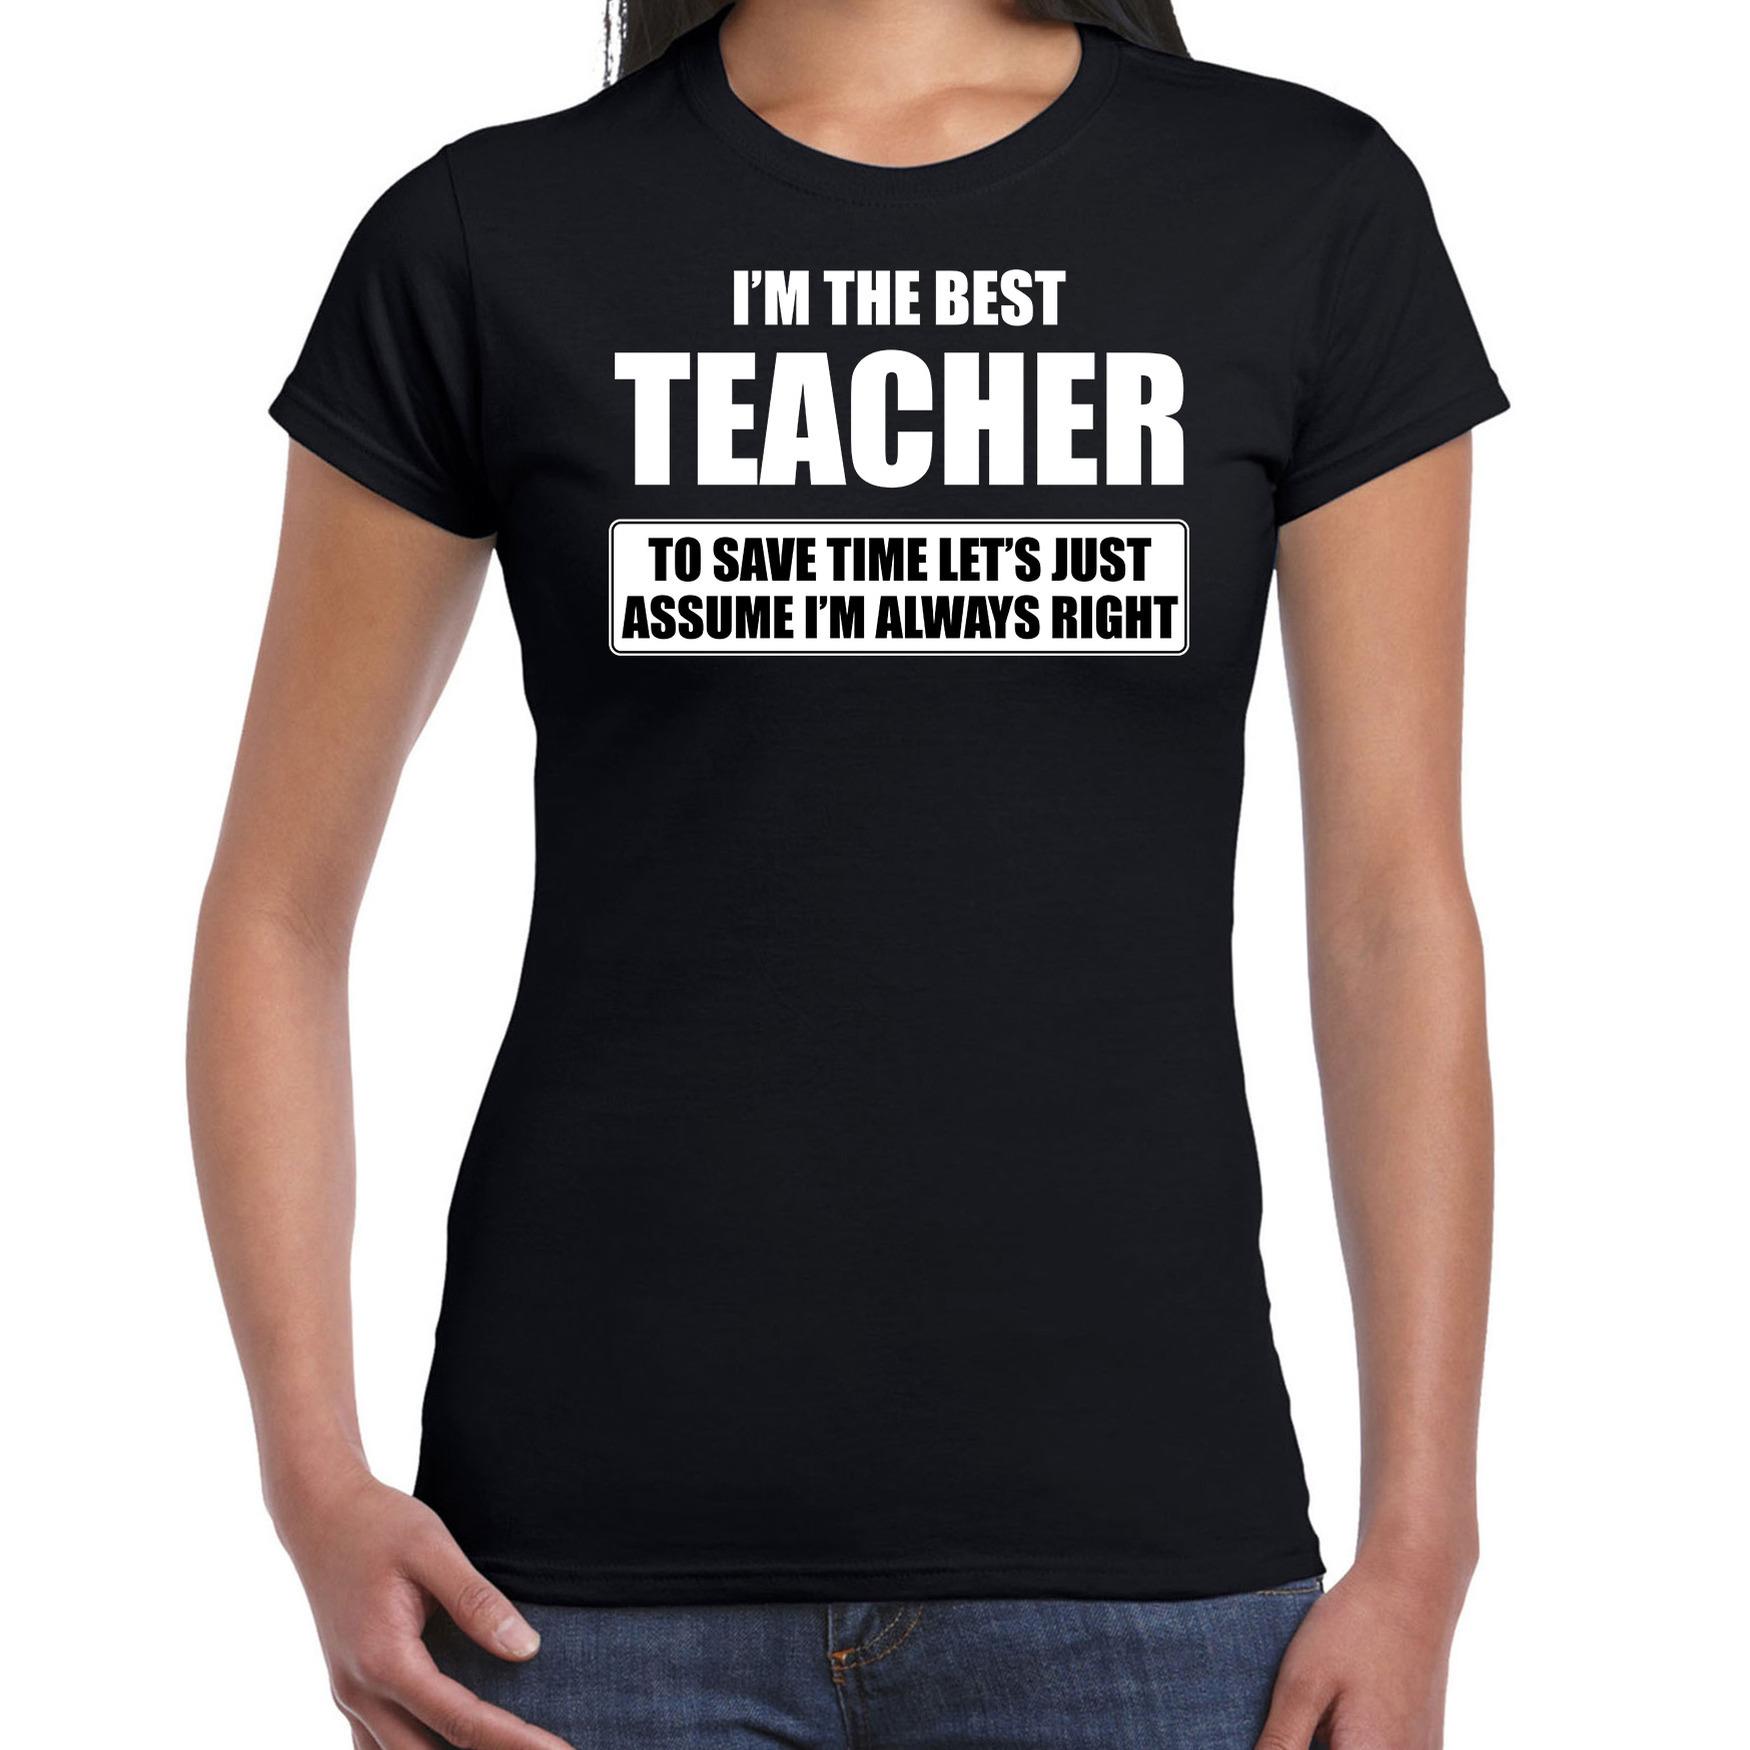 I'm the best teacher t-shirt zwart dames De beste juf cadeau